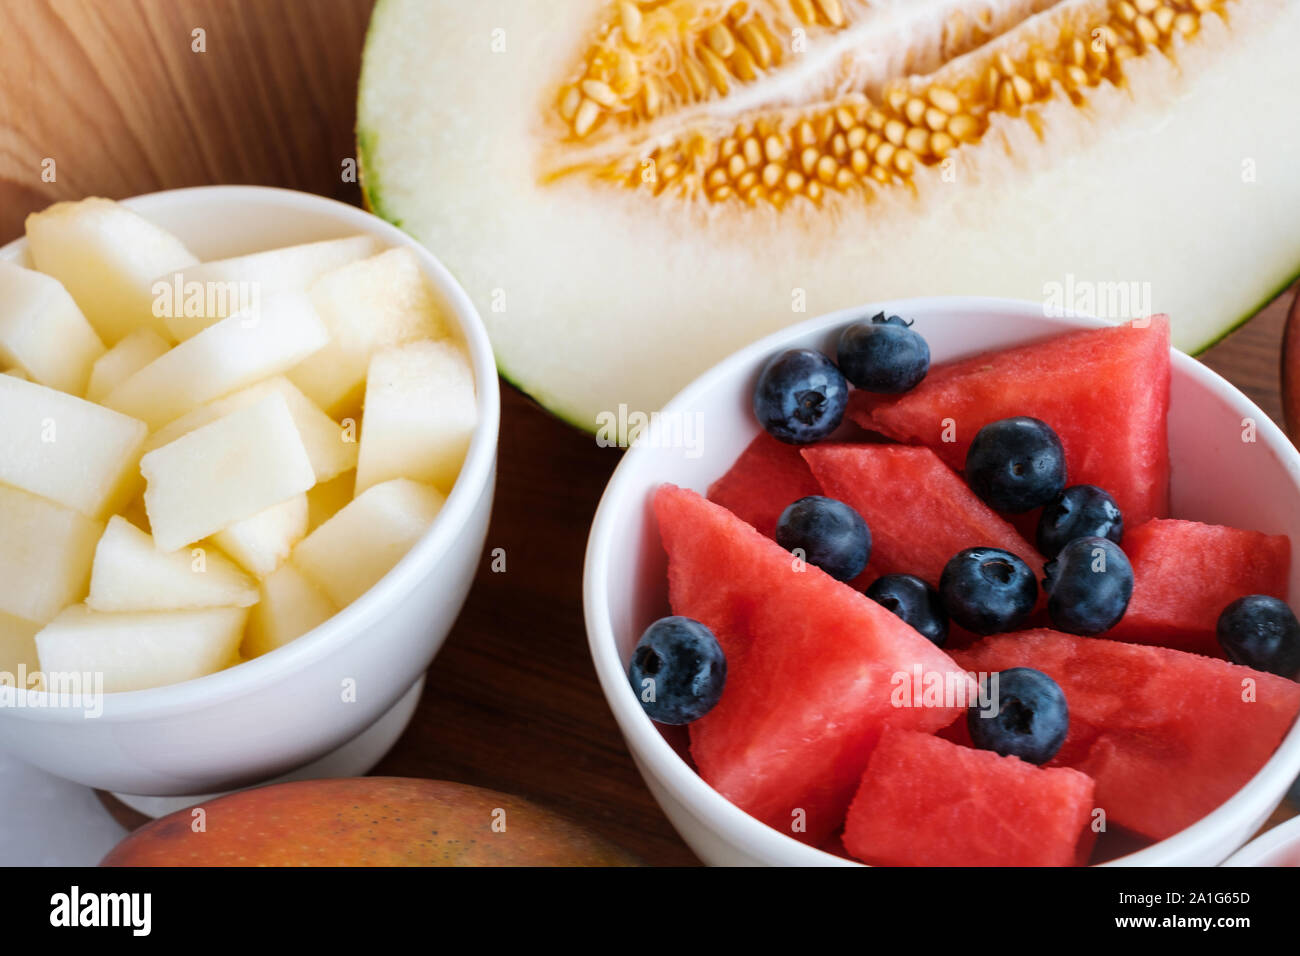 Anguria, zucchero melone e mirtilli fette nella ciotola sul tavolo Foto Stock